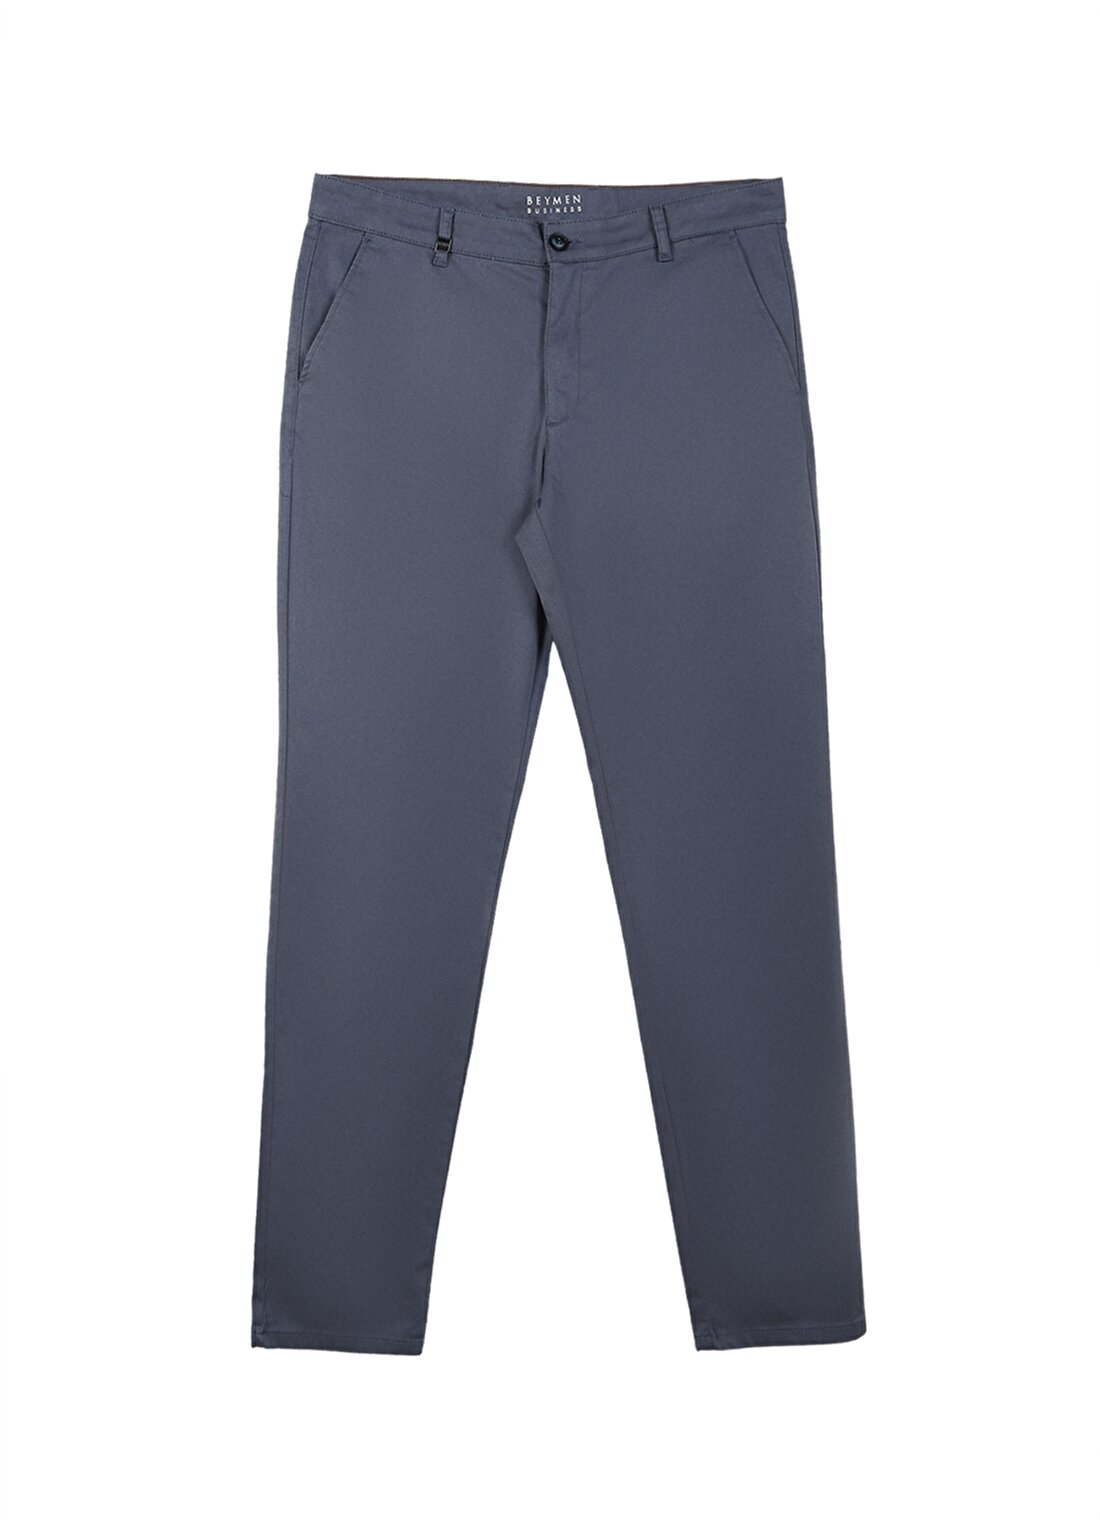 Privé Normal Bel Boru Paça Comfort Fit Gri - Mavi Erkek Pantolon 4BX012320002